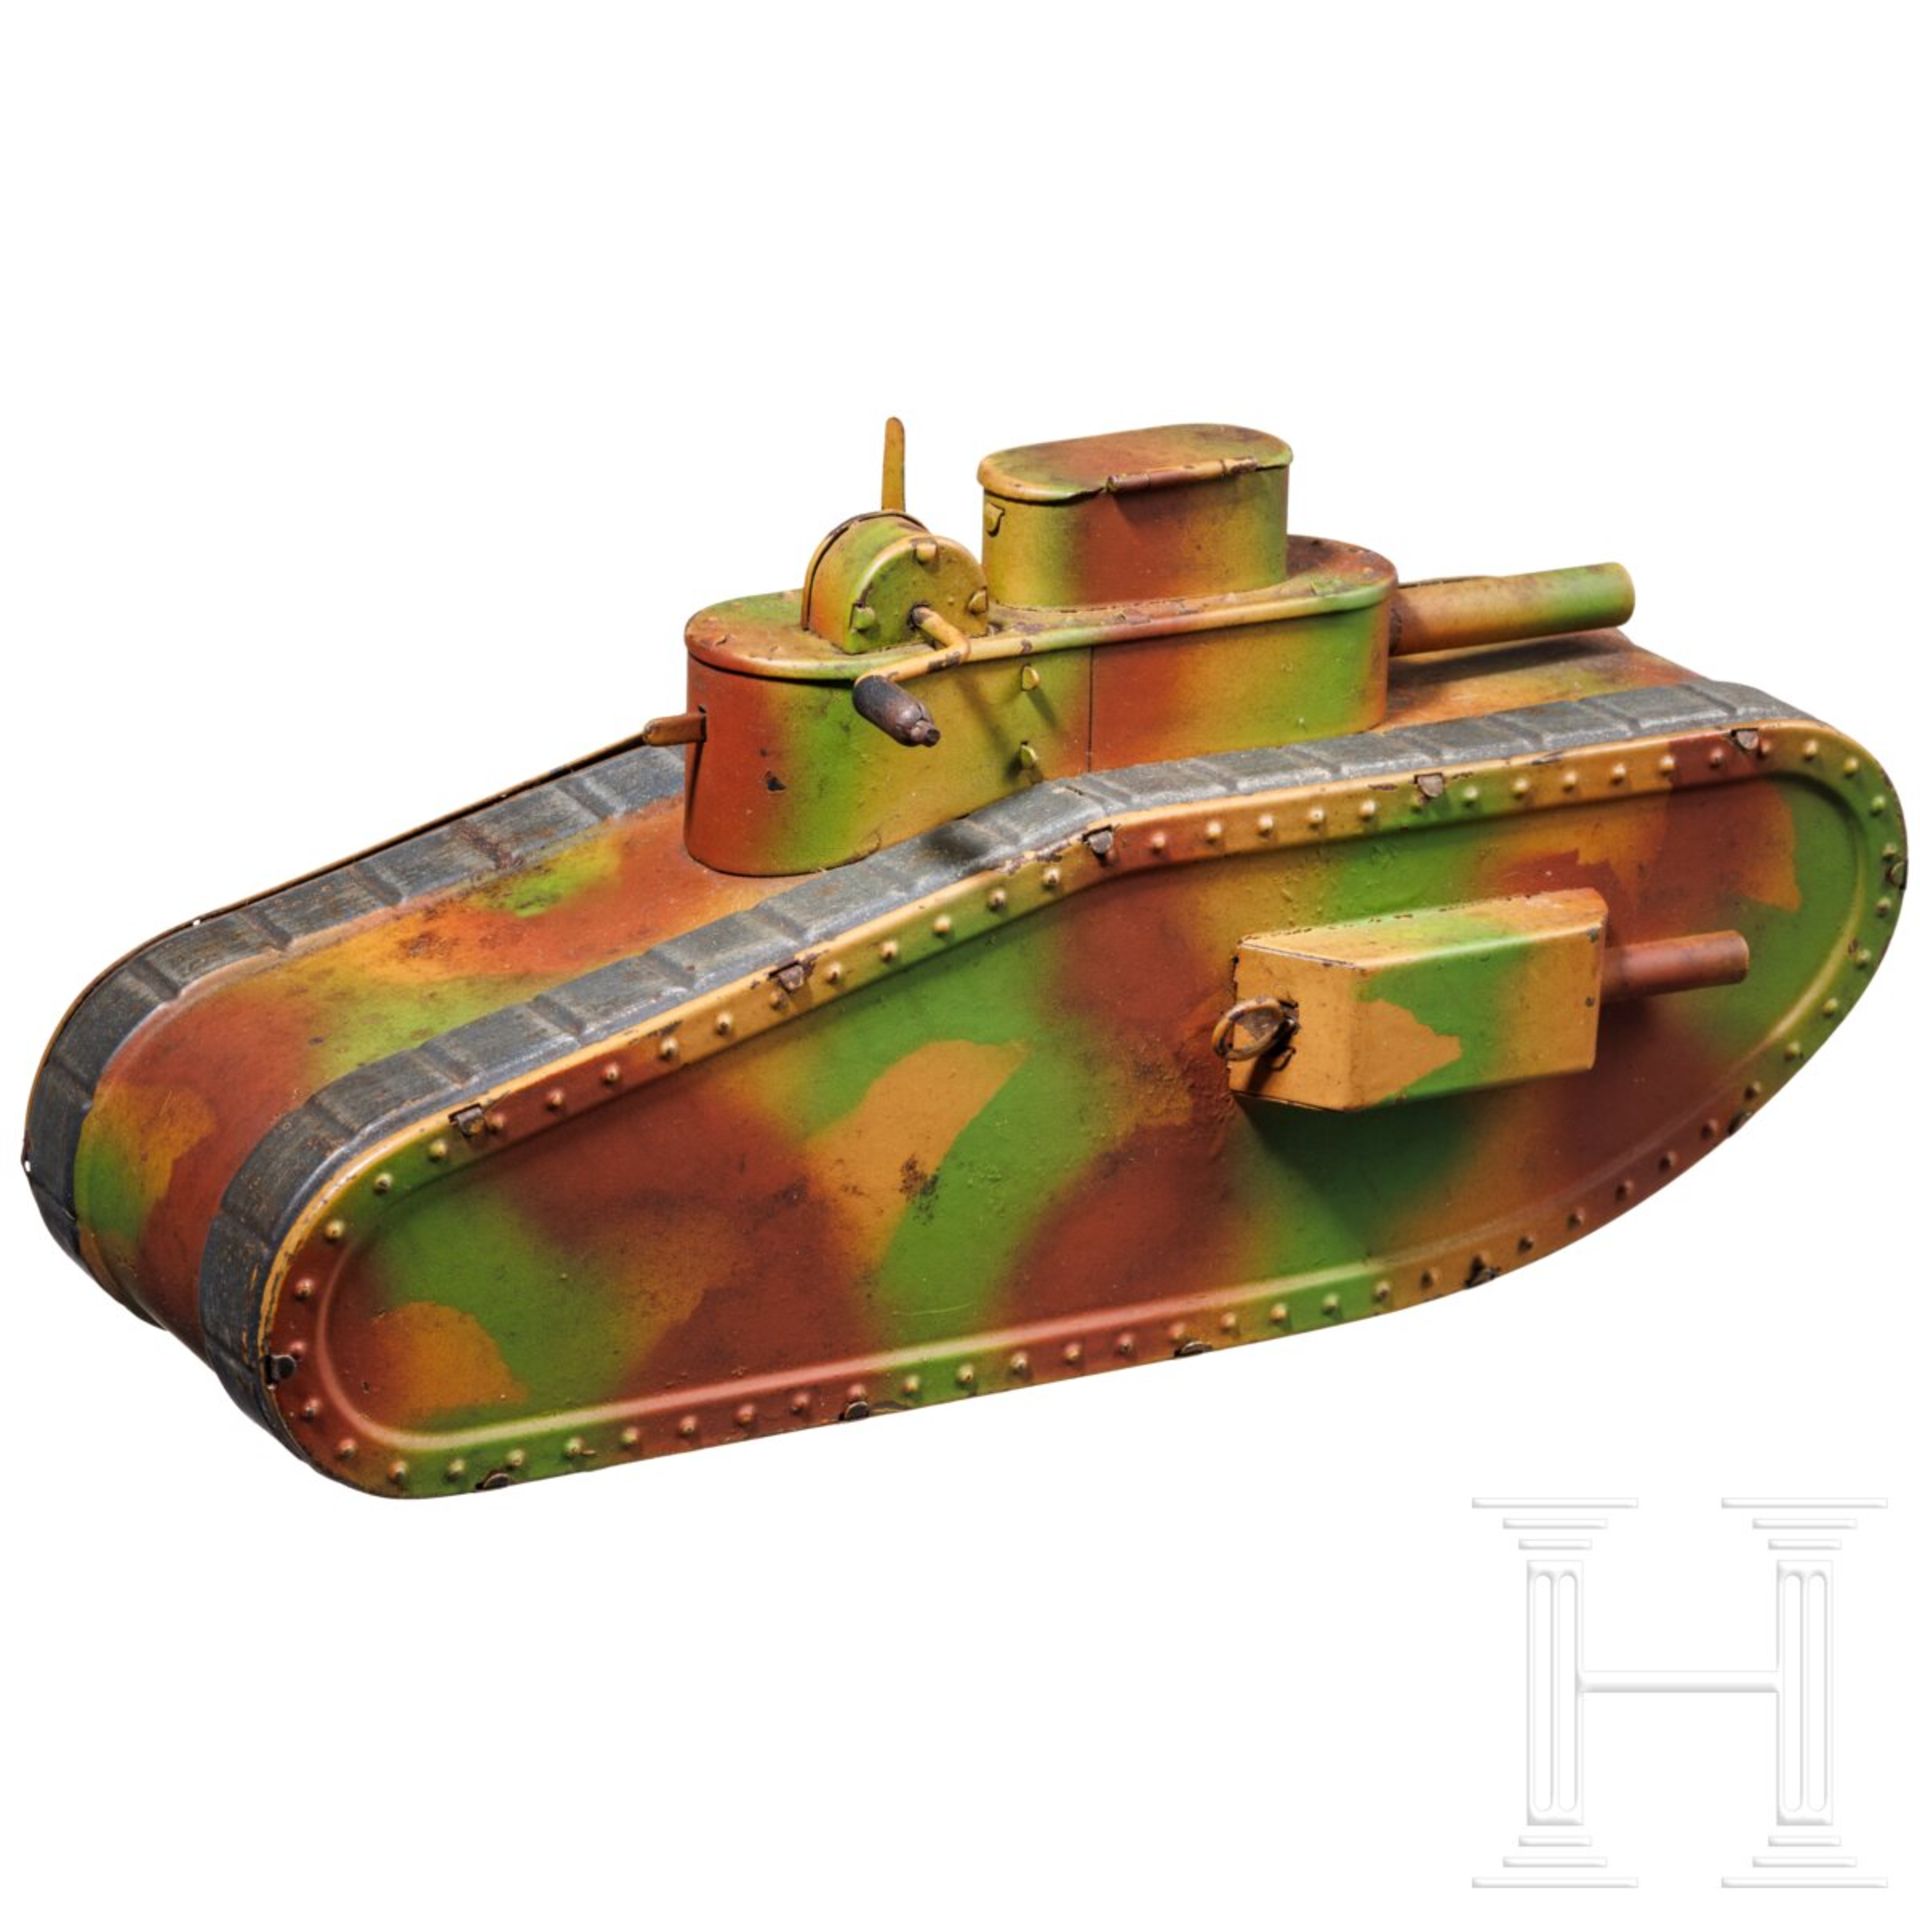 Hausser Tank 0/730, Ausführung ohne Raupenketten, mit Hess-Patentantrieb und Schießfunktion - Image 2 of 6